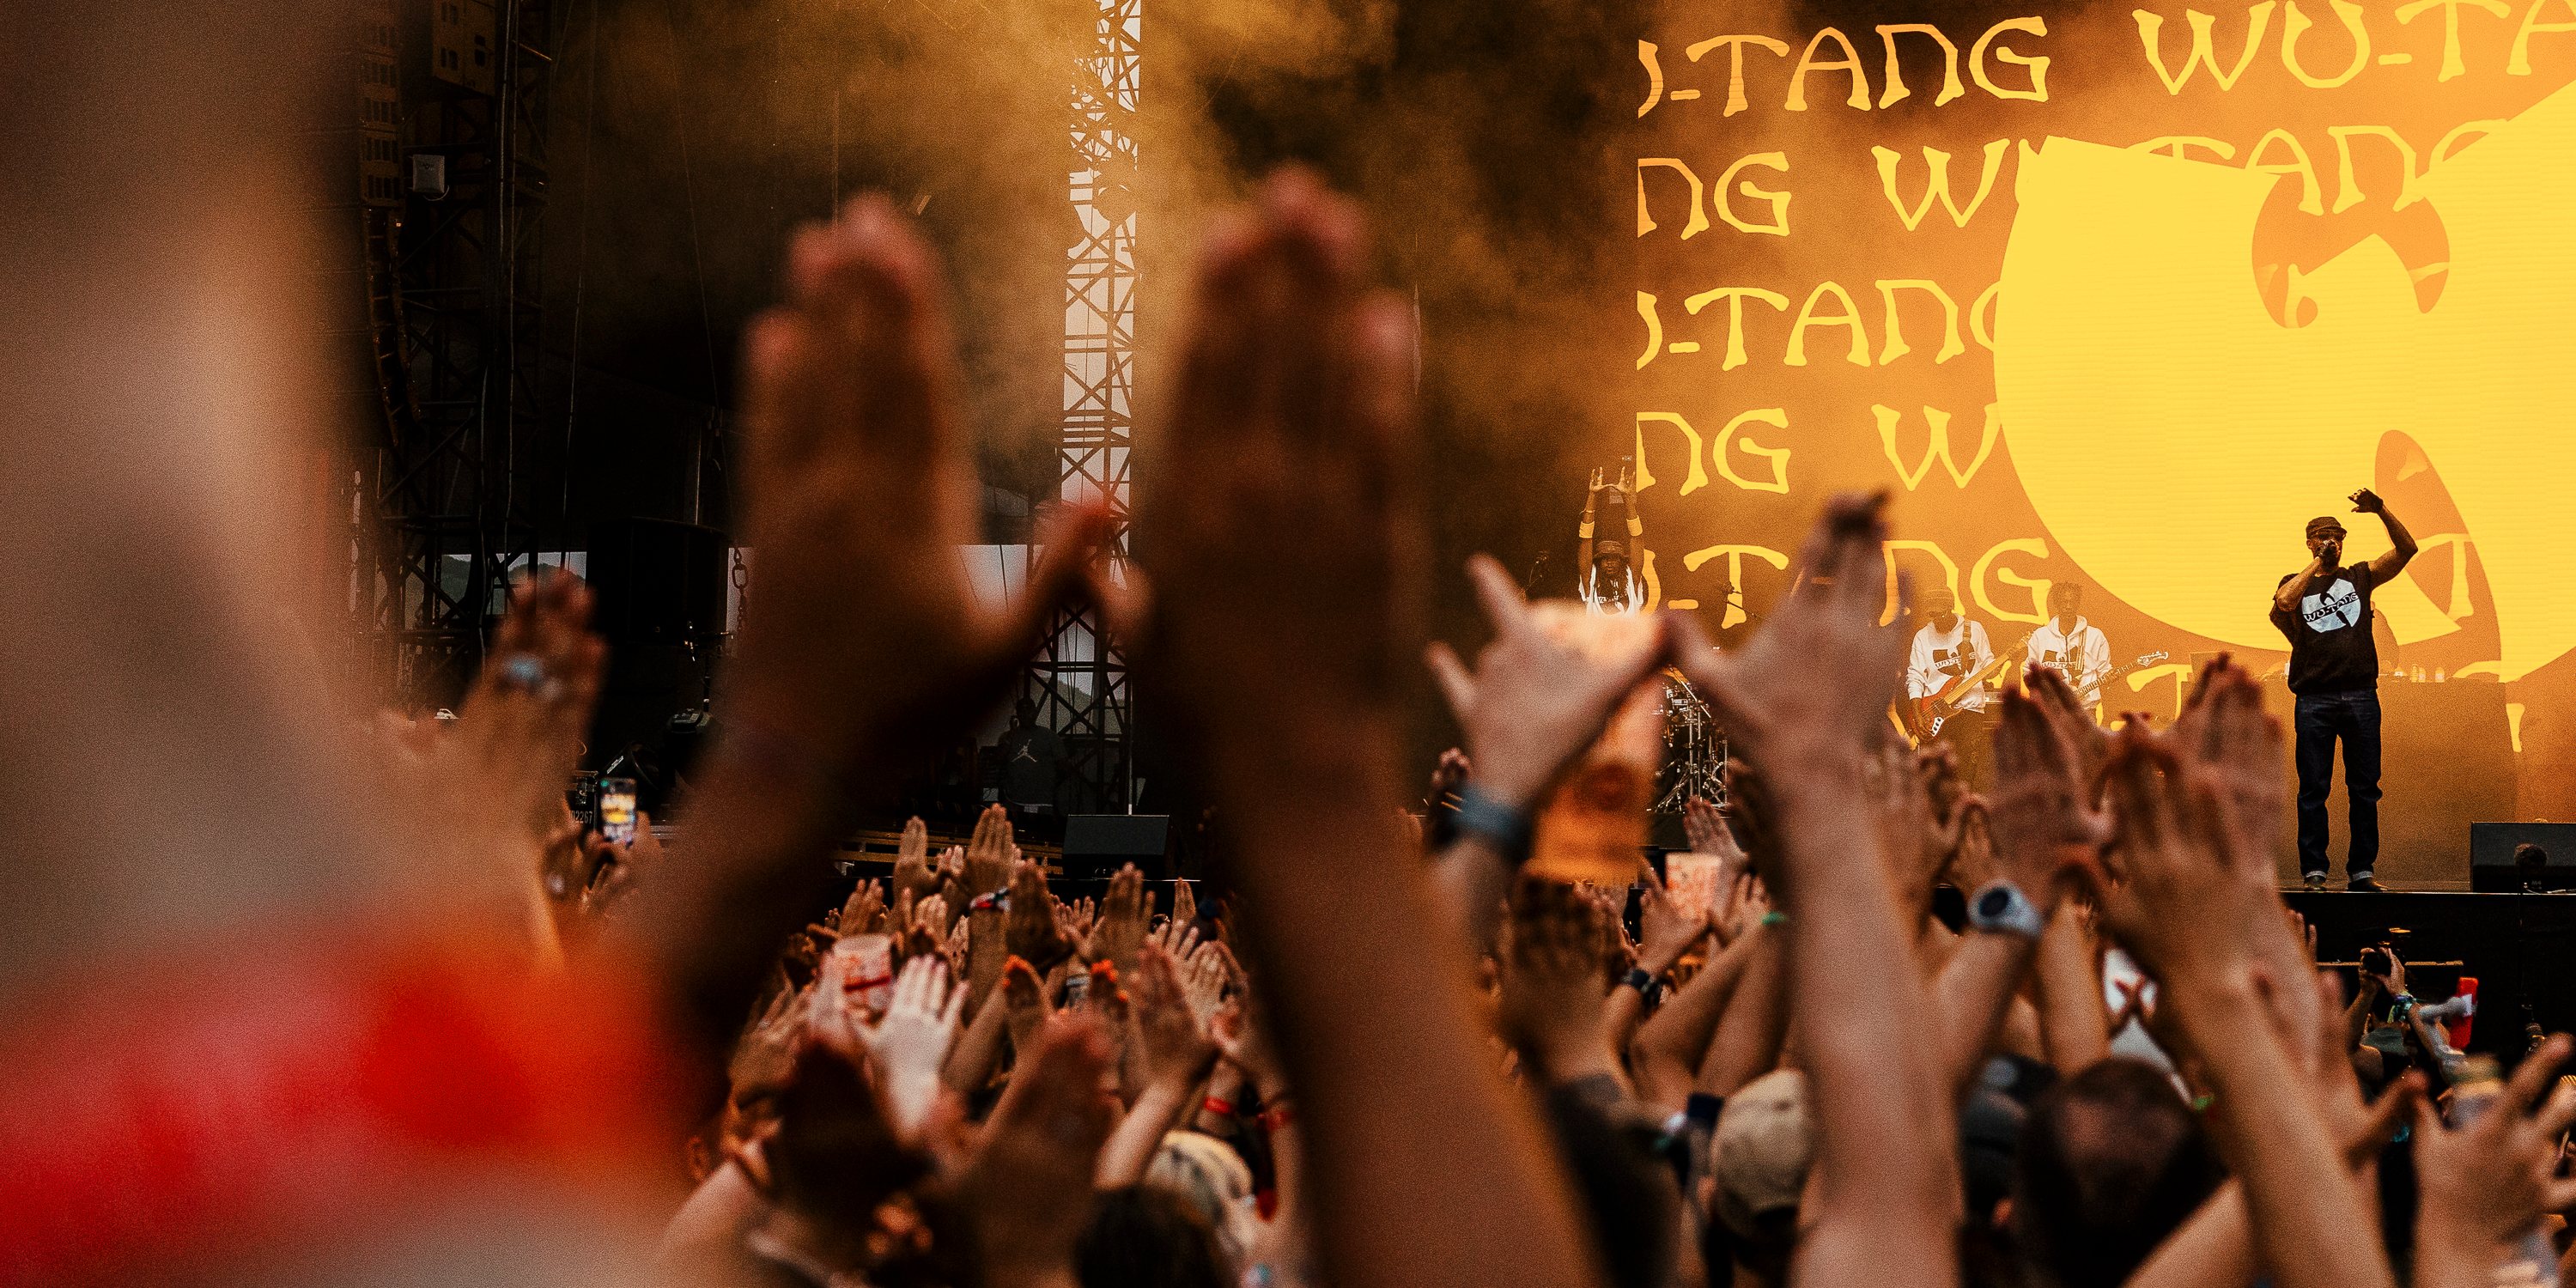 Os Wu-Tang Clan atuaram pela primeira vez em Portugal